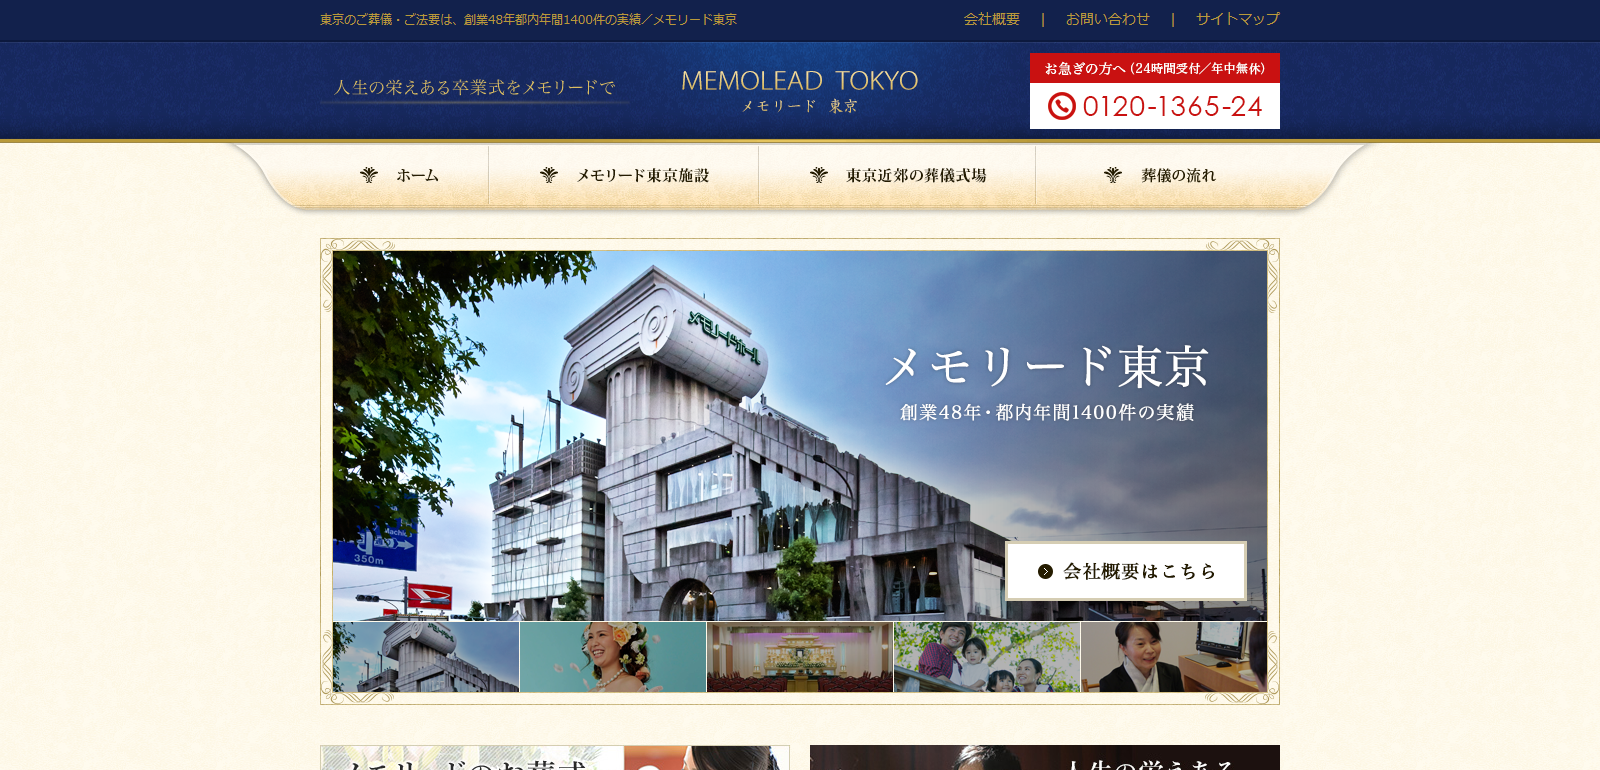 FireShot Capture 25 - 株式会社メモリード東京公式サイト - http___www.tokyo-memolead.co.jp_